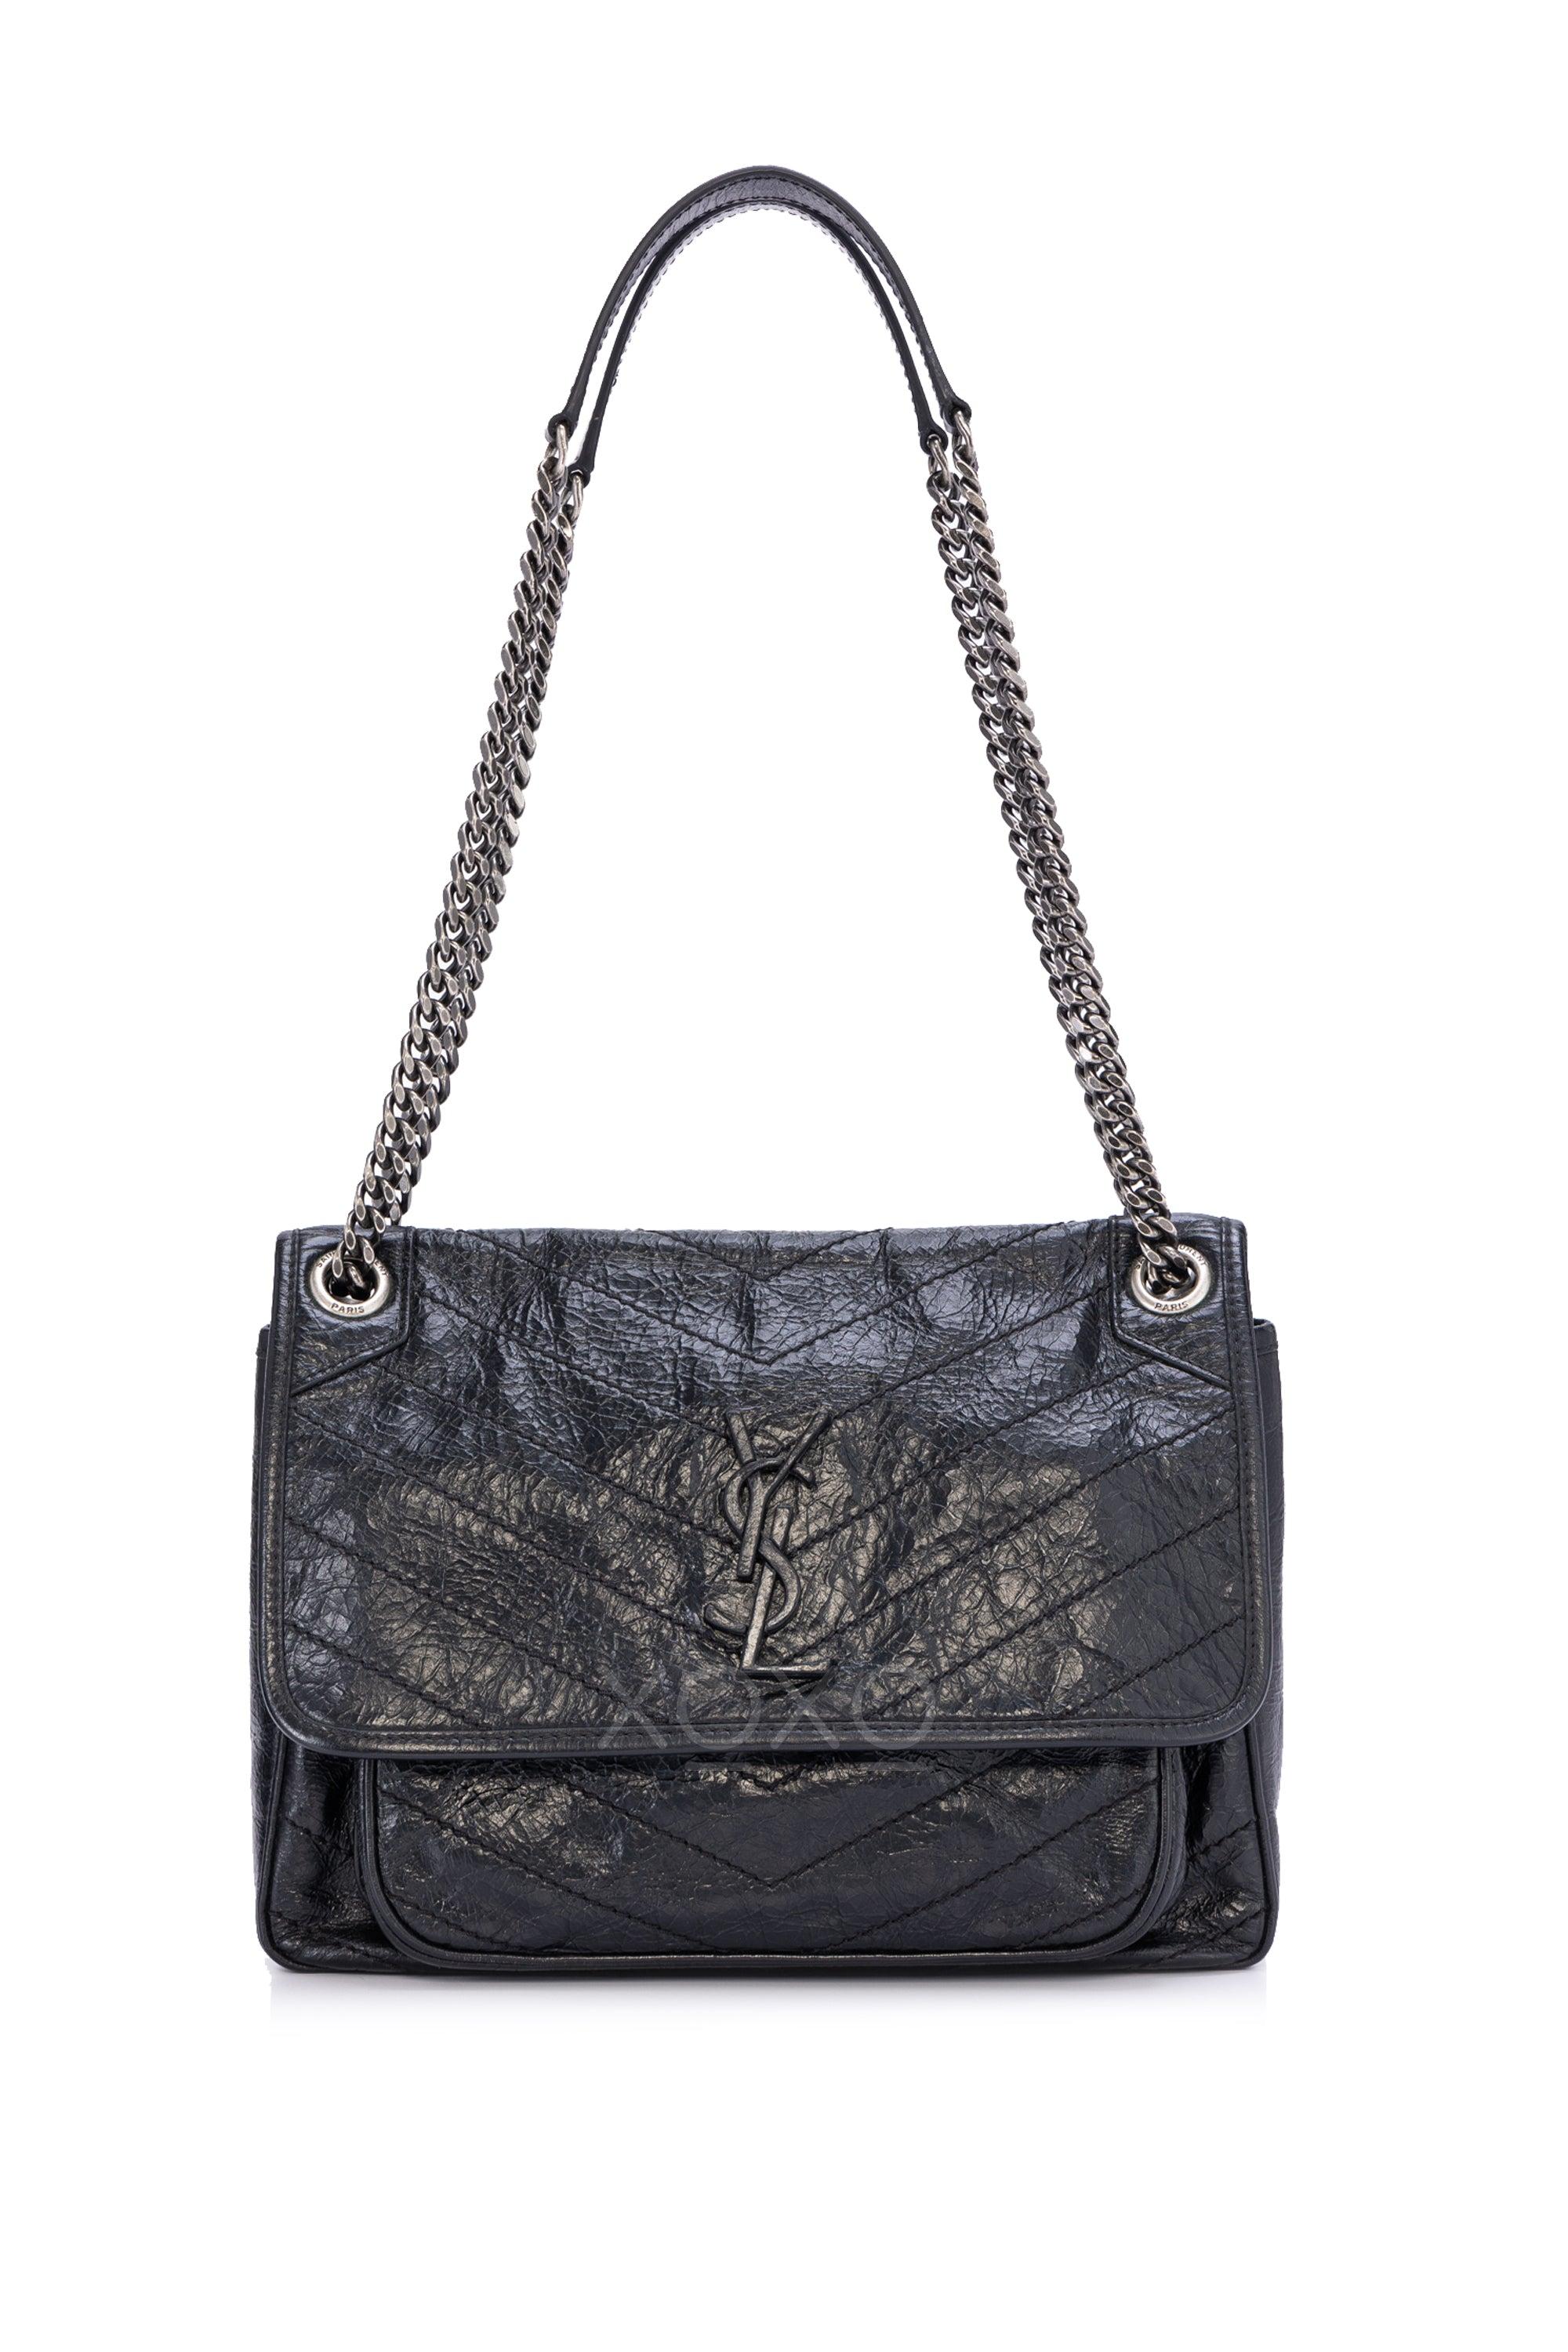 Saint Laurent - Niki Black Crackled Leather Chain Shoulder Bag